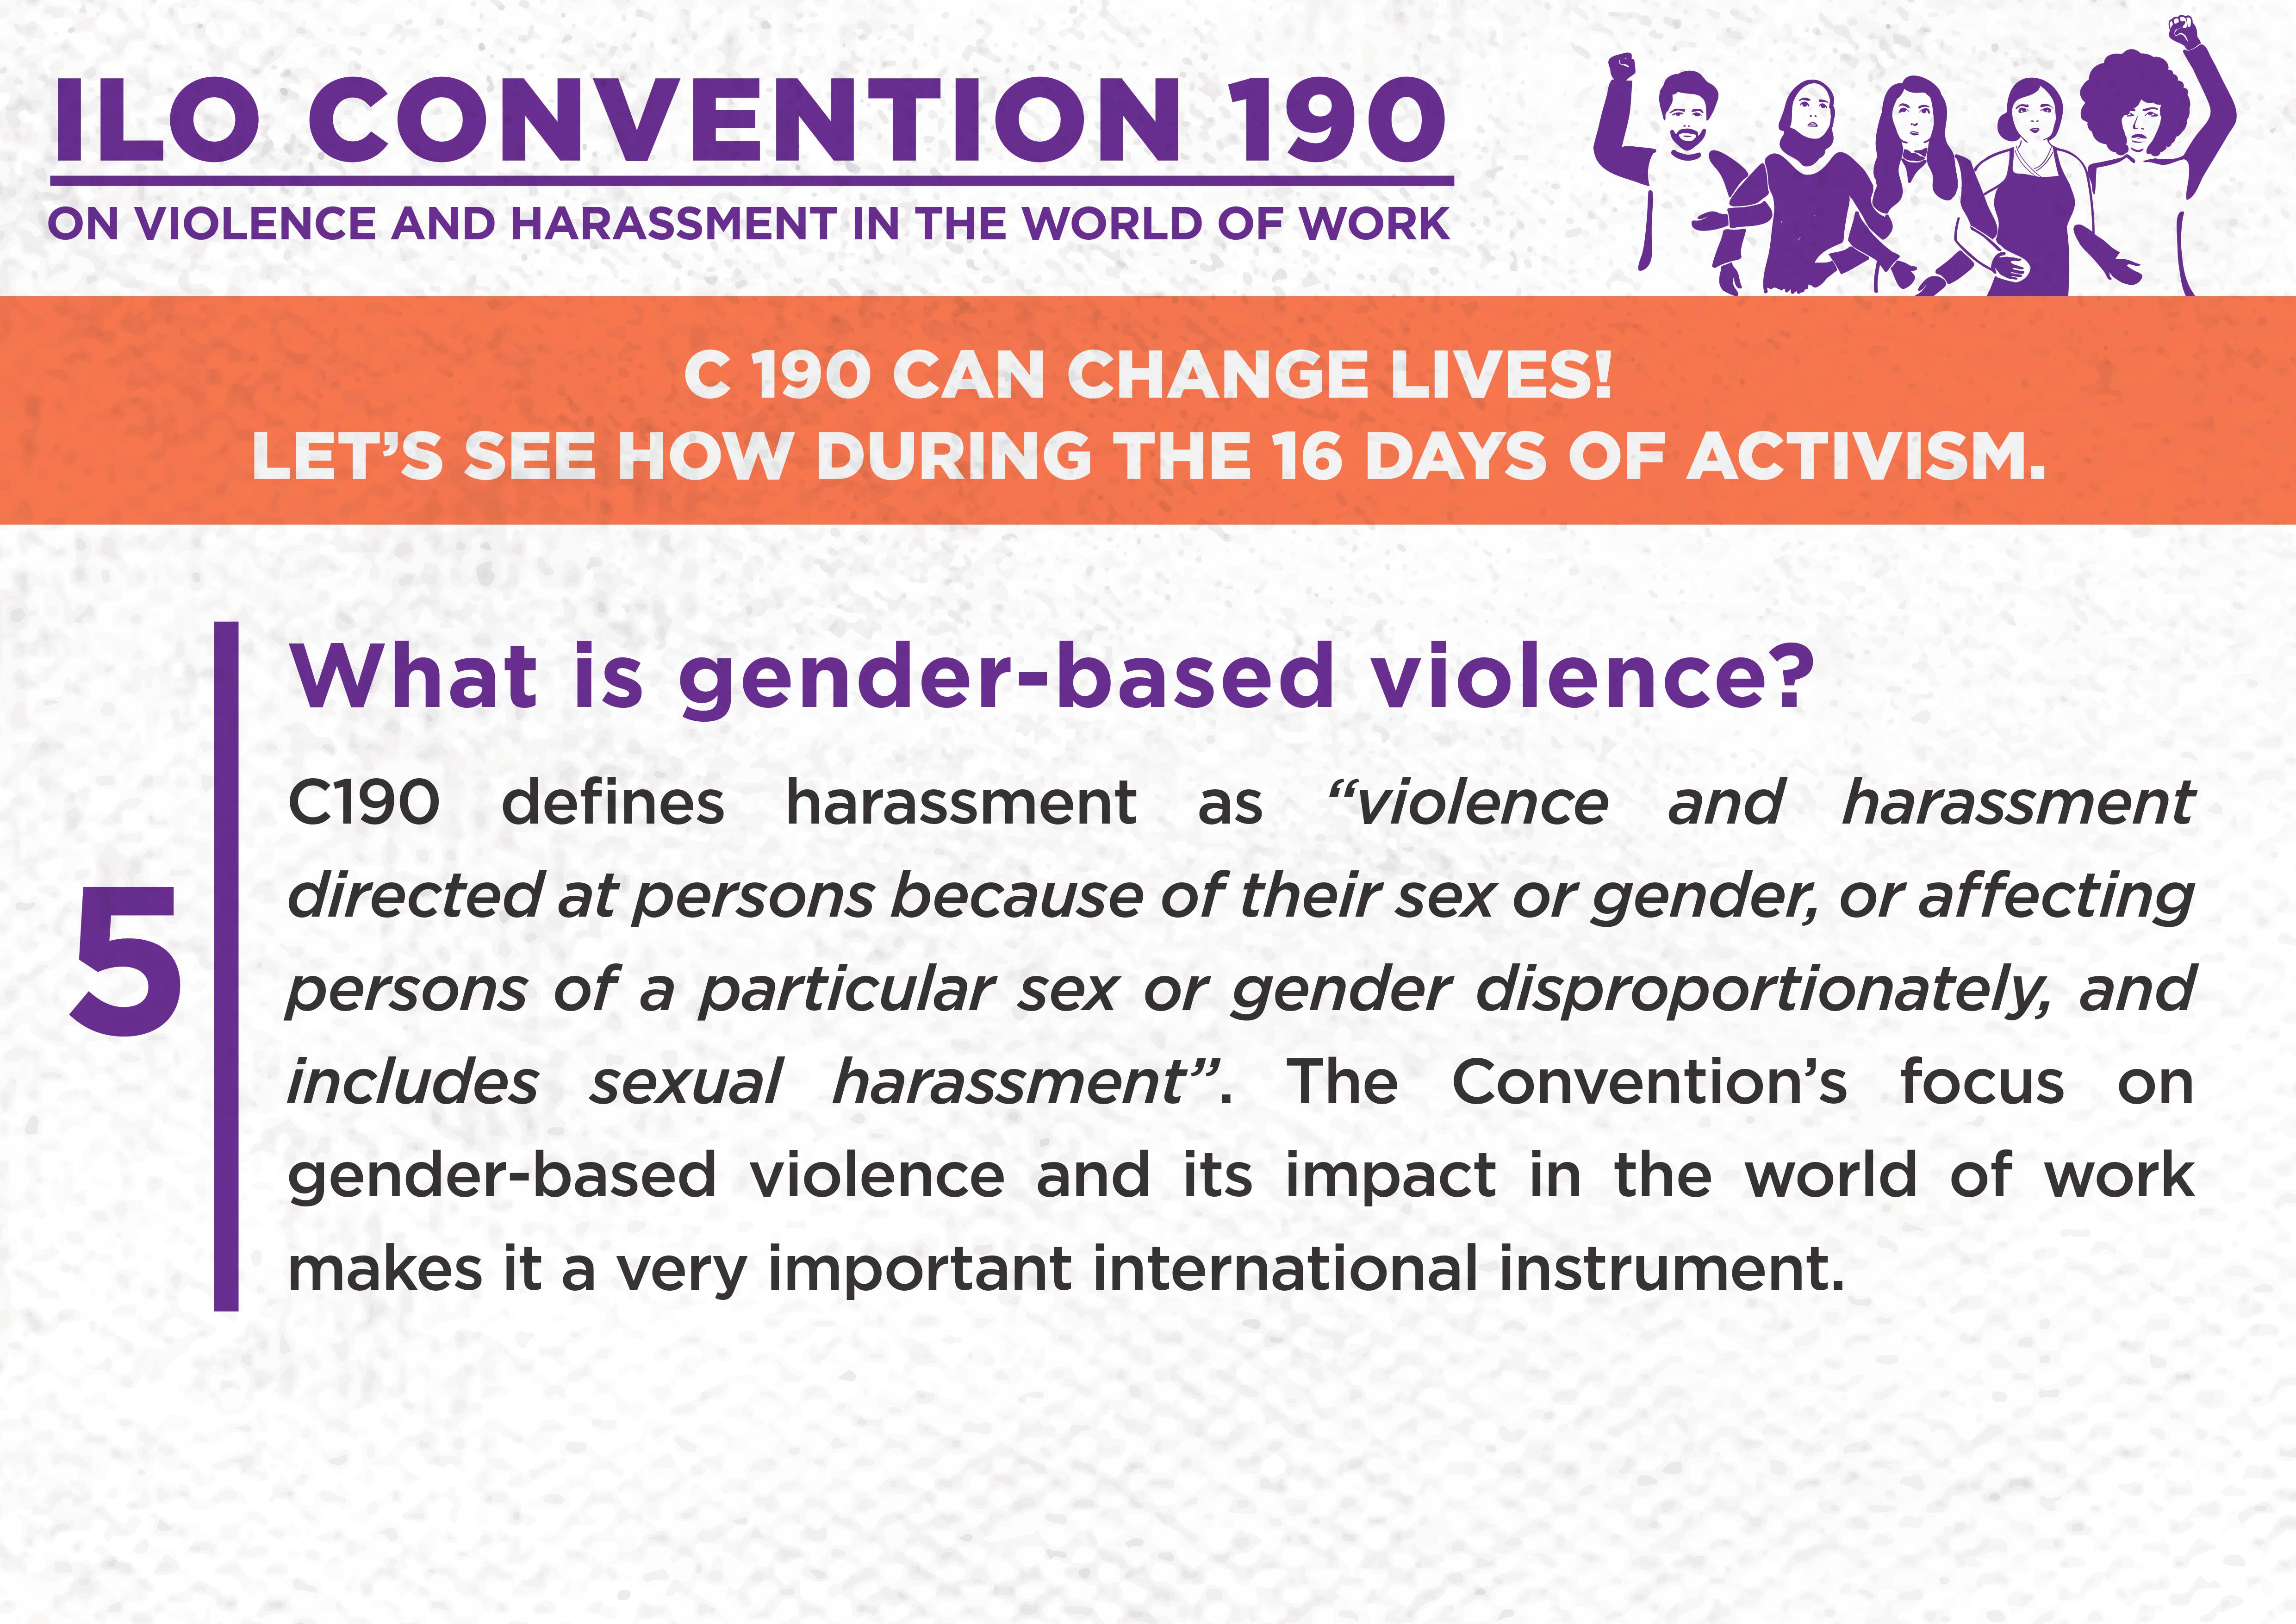 5. What is gender-based violence?